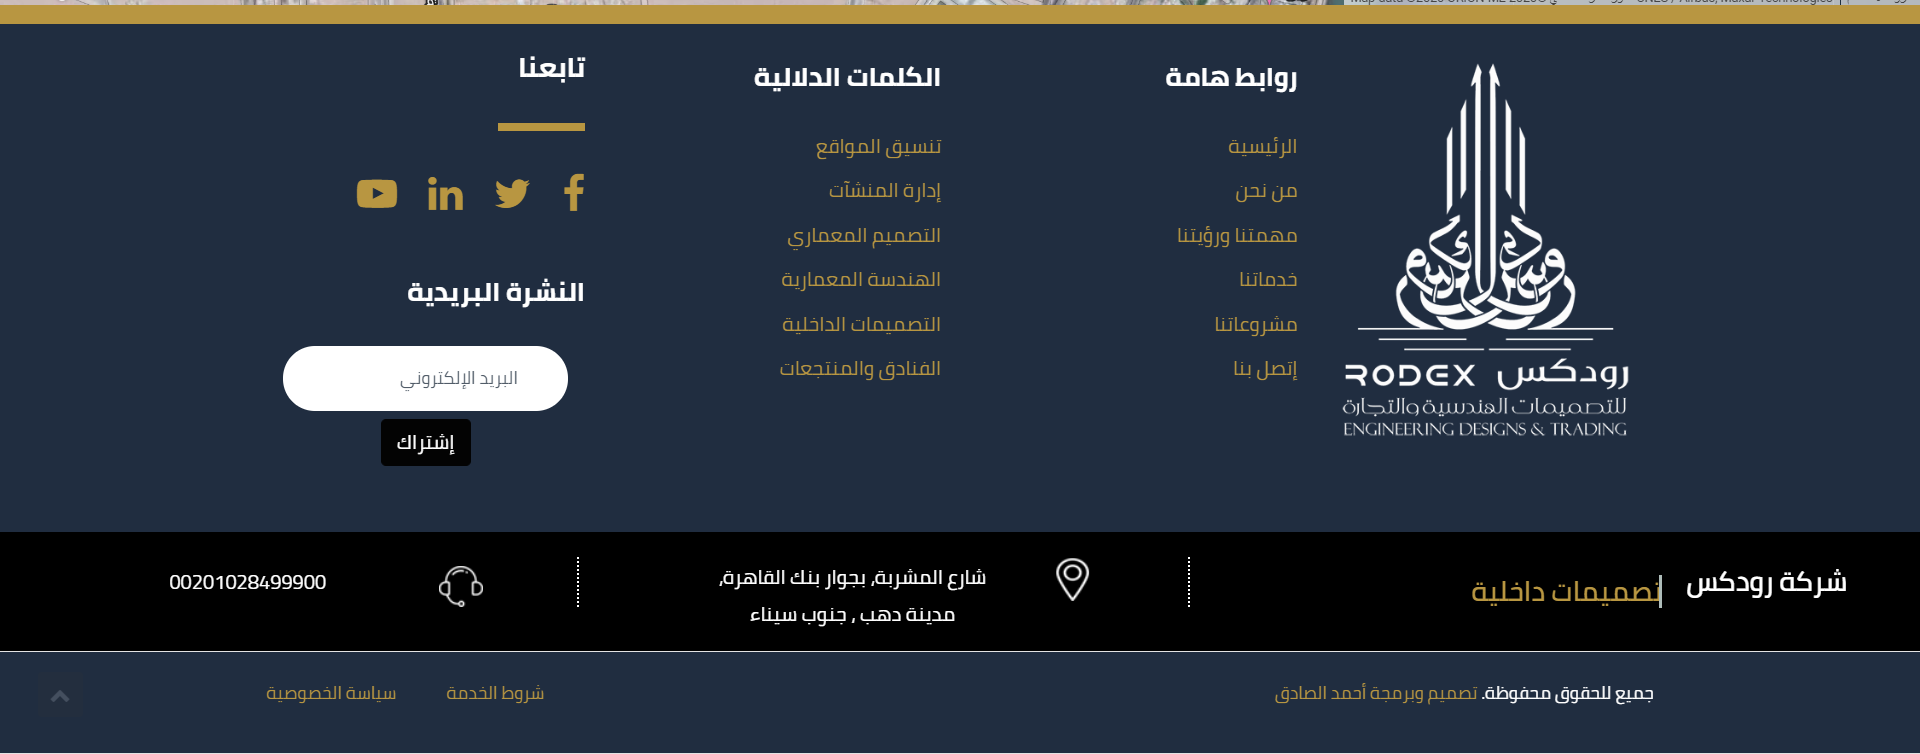 تصميم موقع الكتروني لشركة تصميم معماري وتصميم داخلي رودكس مصر - دهب